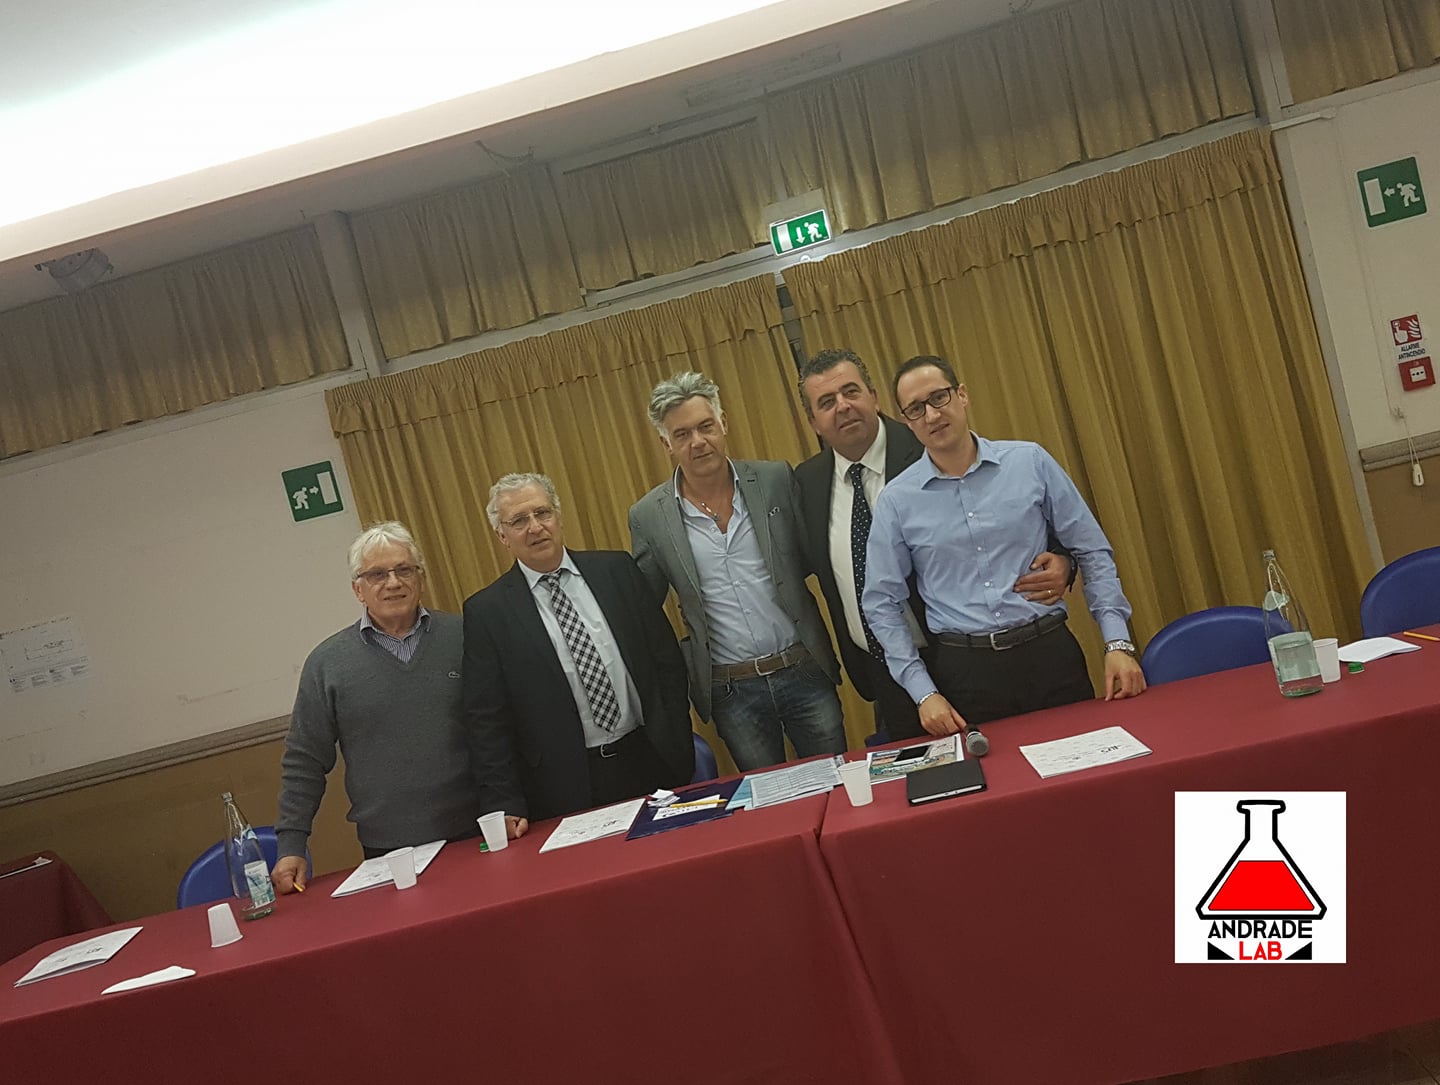 Ciampino – Palacavicchi “Le nuove frontiere del sindacato” 21/10/2017